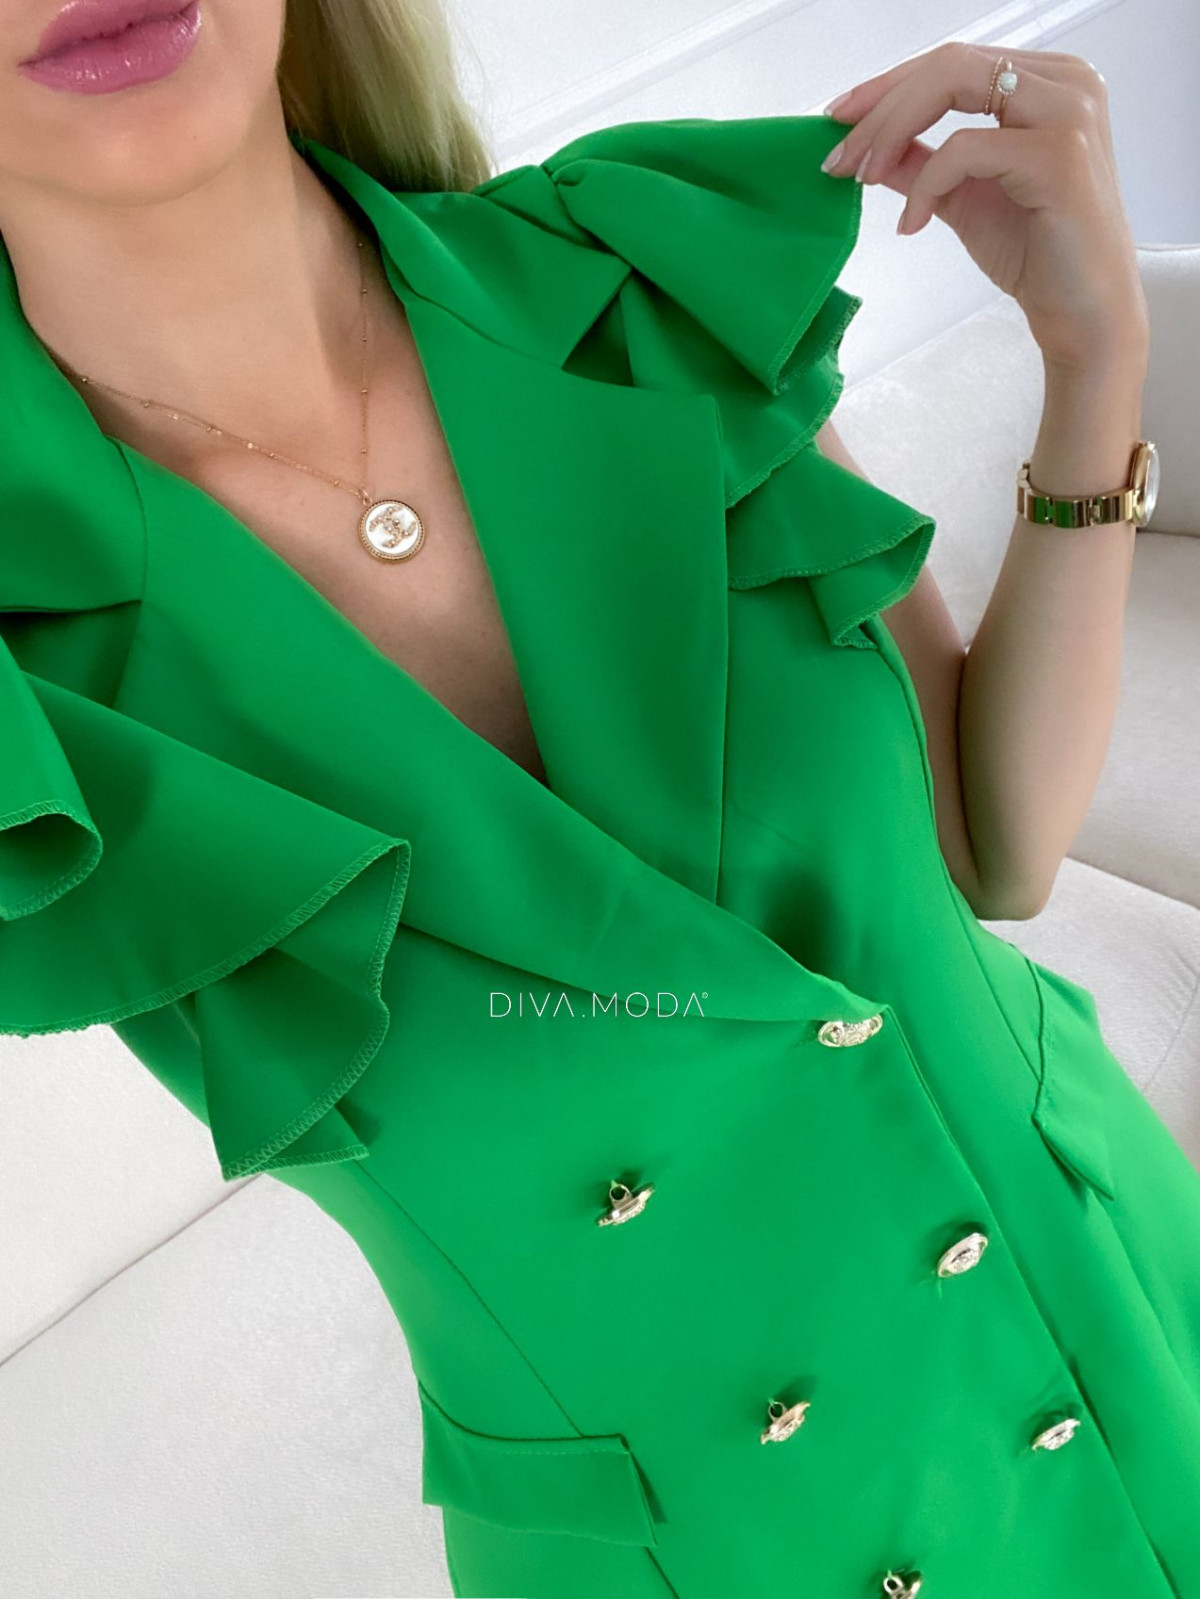 Sakové šaty s volány na ramenou trávově zelené M 68